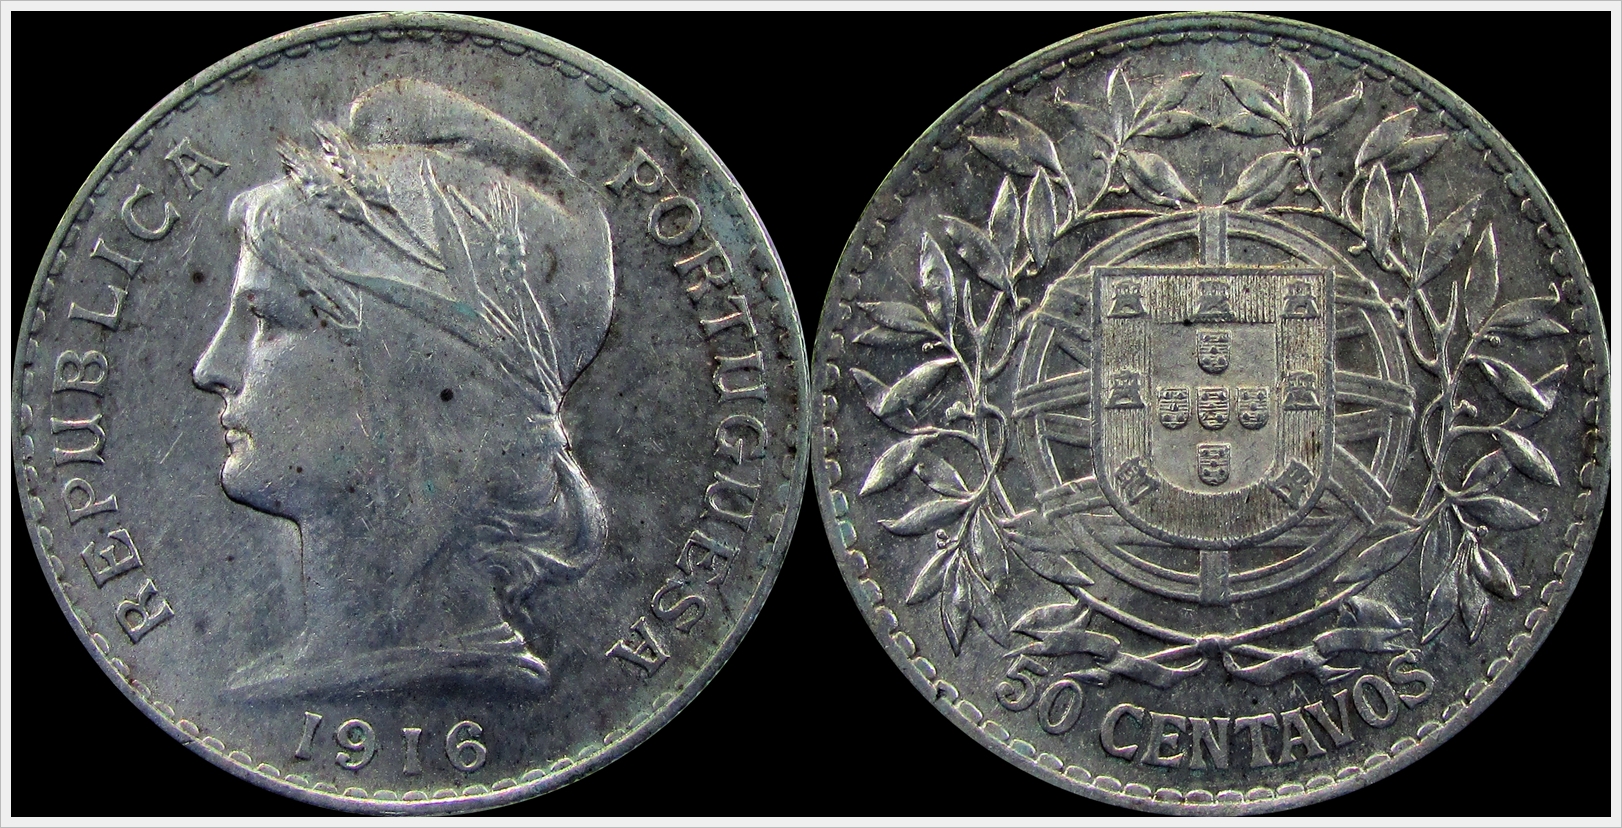 Portugal 1916 50 Centavos.jpg